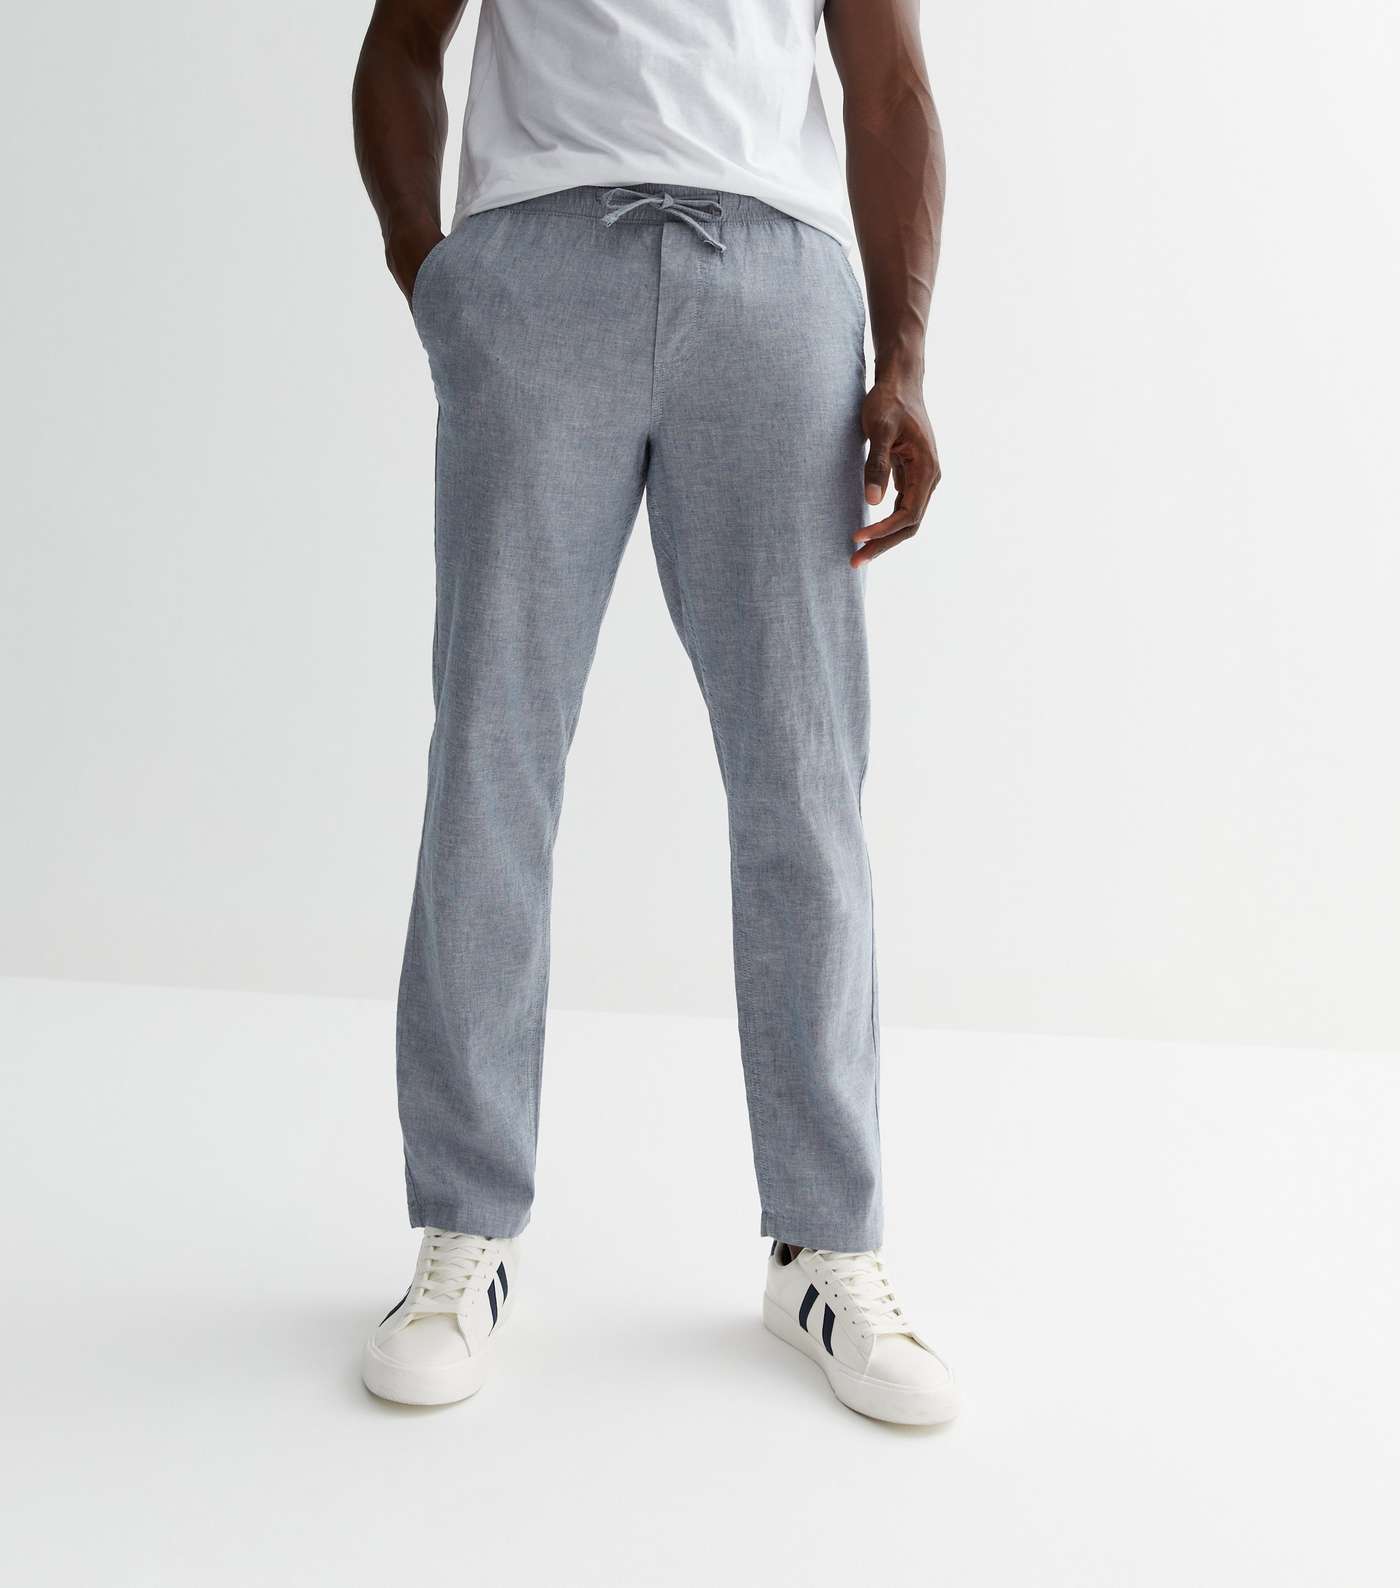 Jack & Jones Grey Linen-Look Trousers Image 2